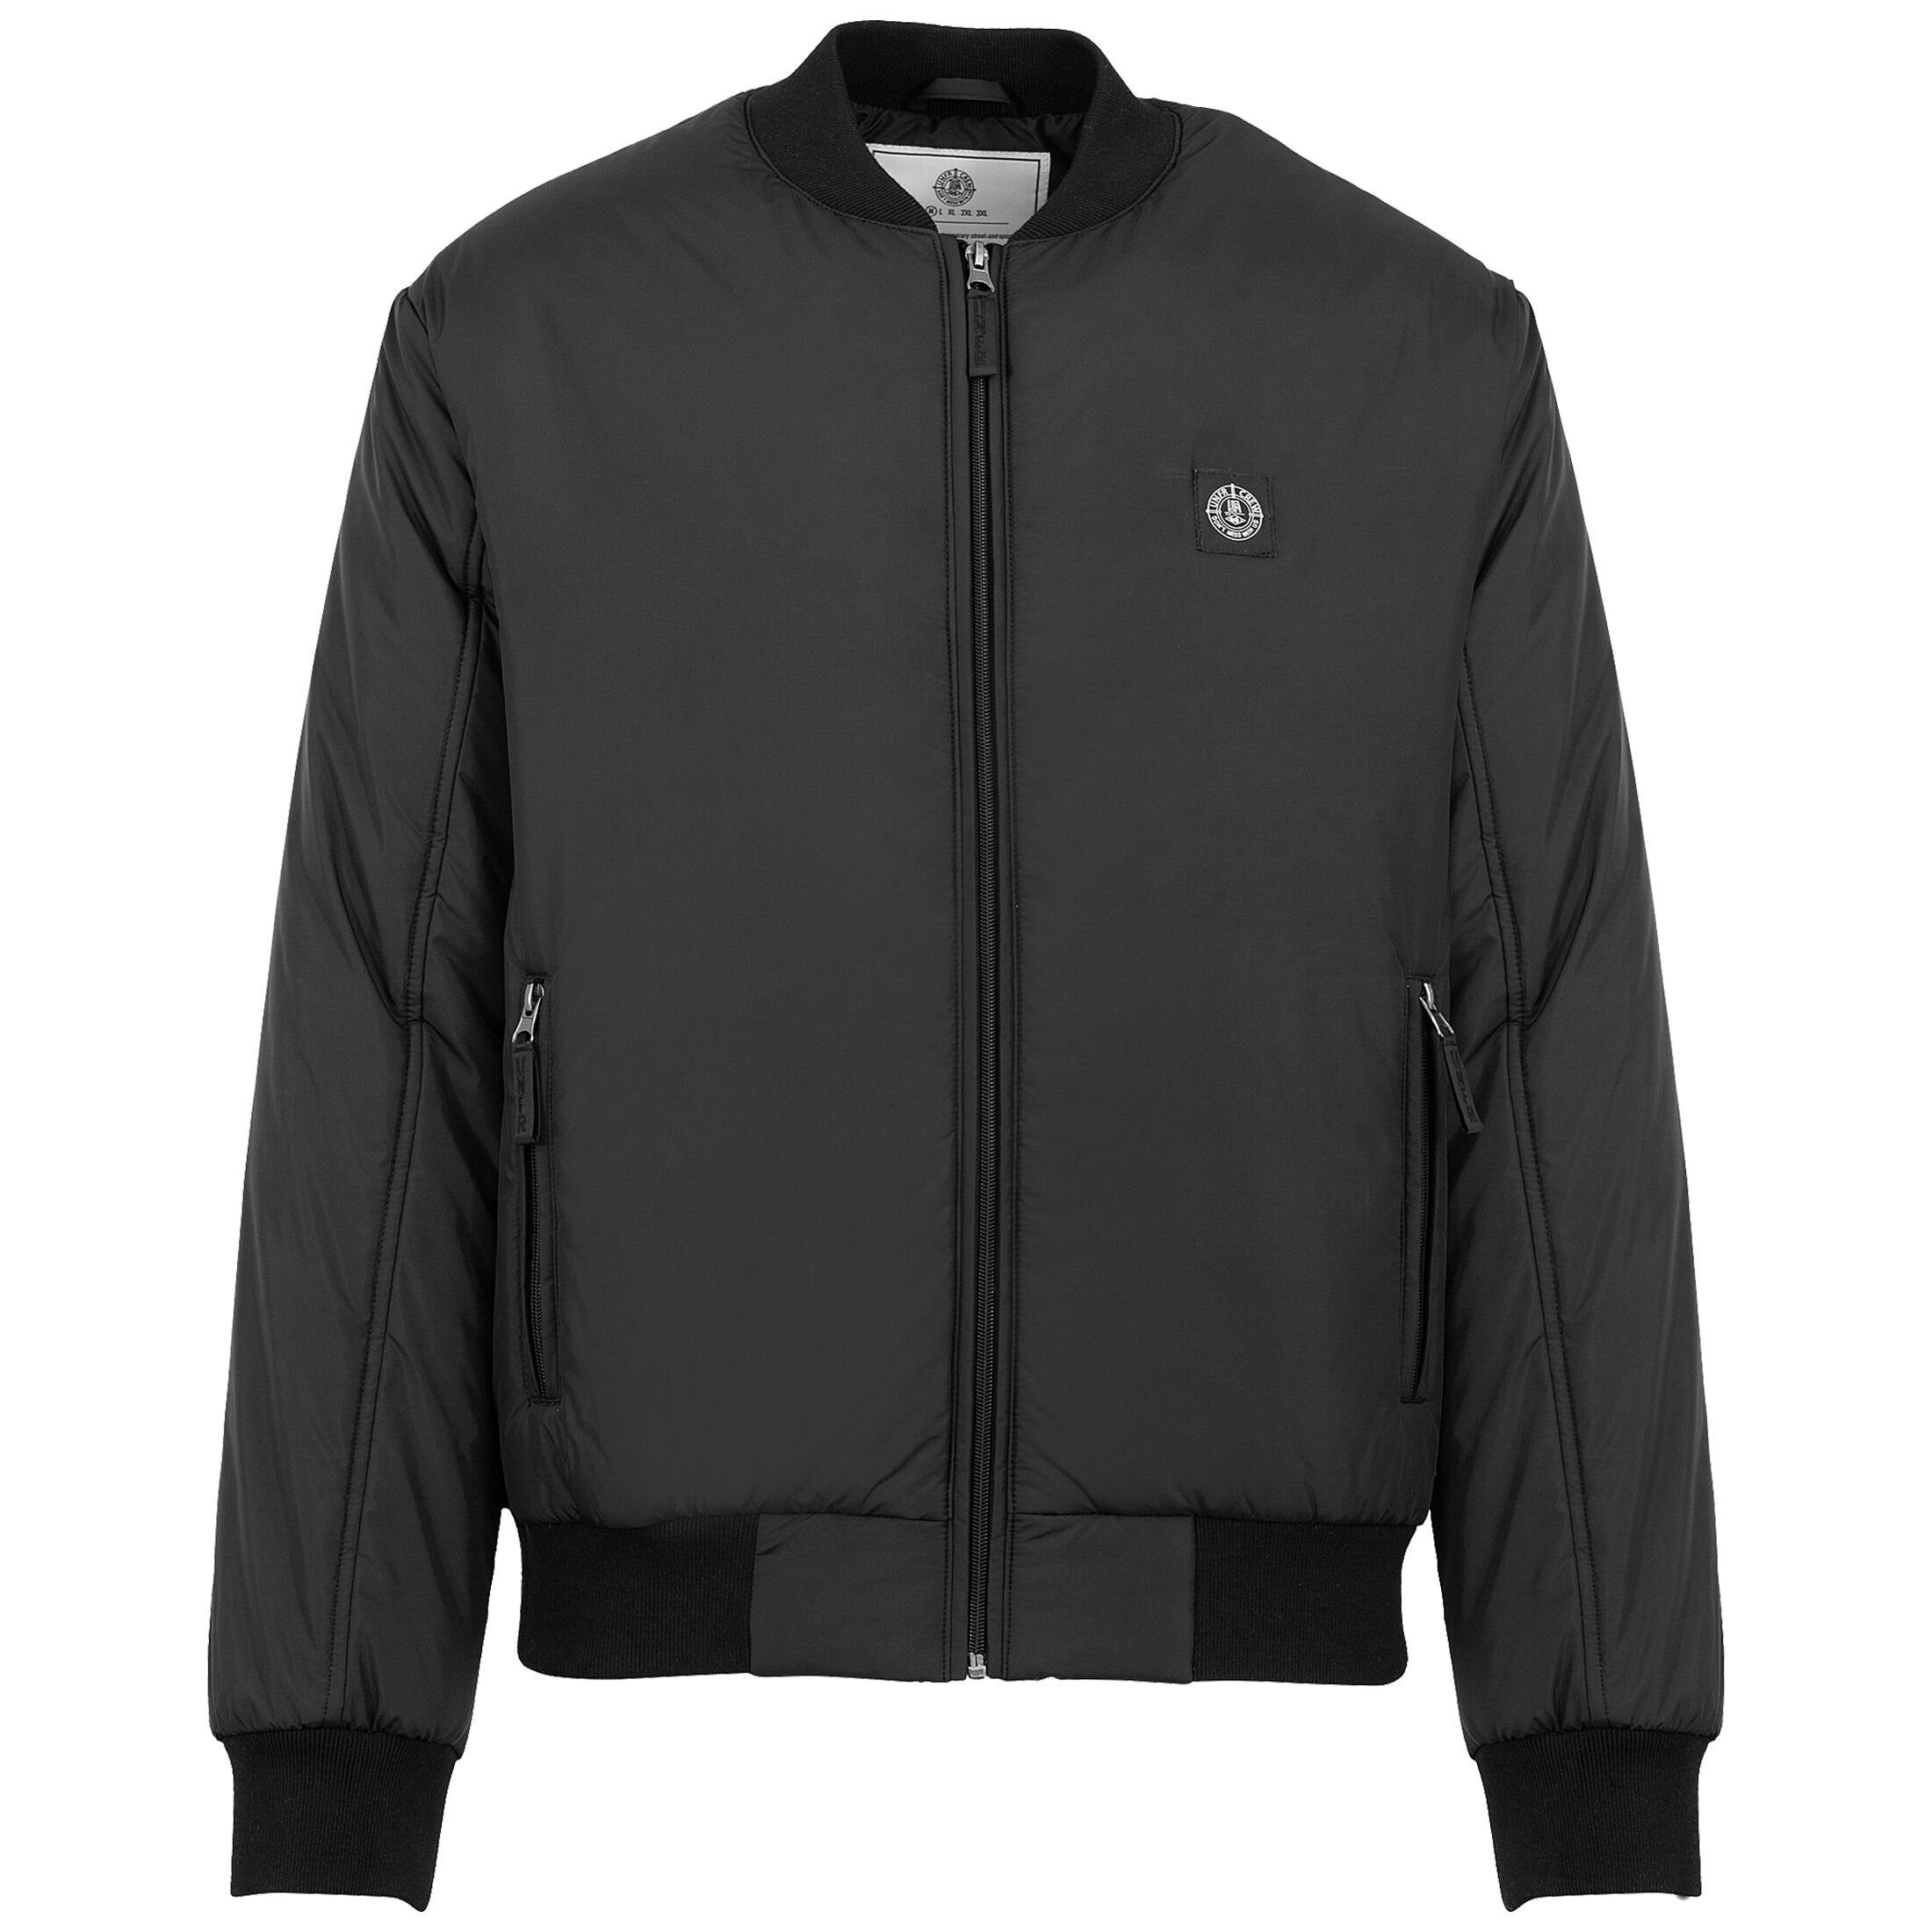 KnowledgeCotton Apparel Jacken online kaufen | OTTO